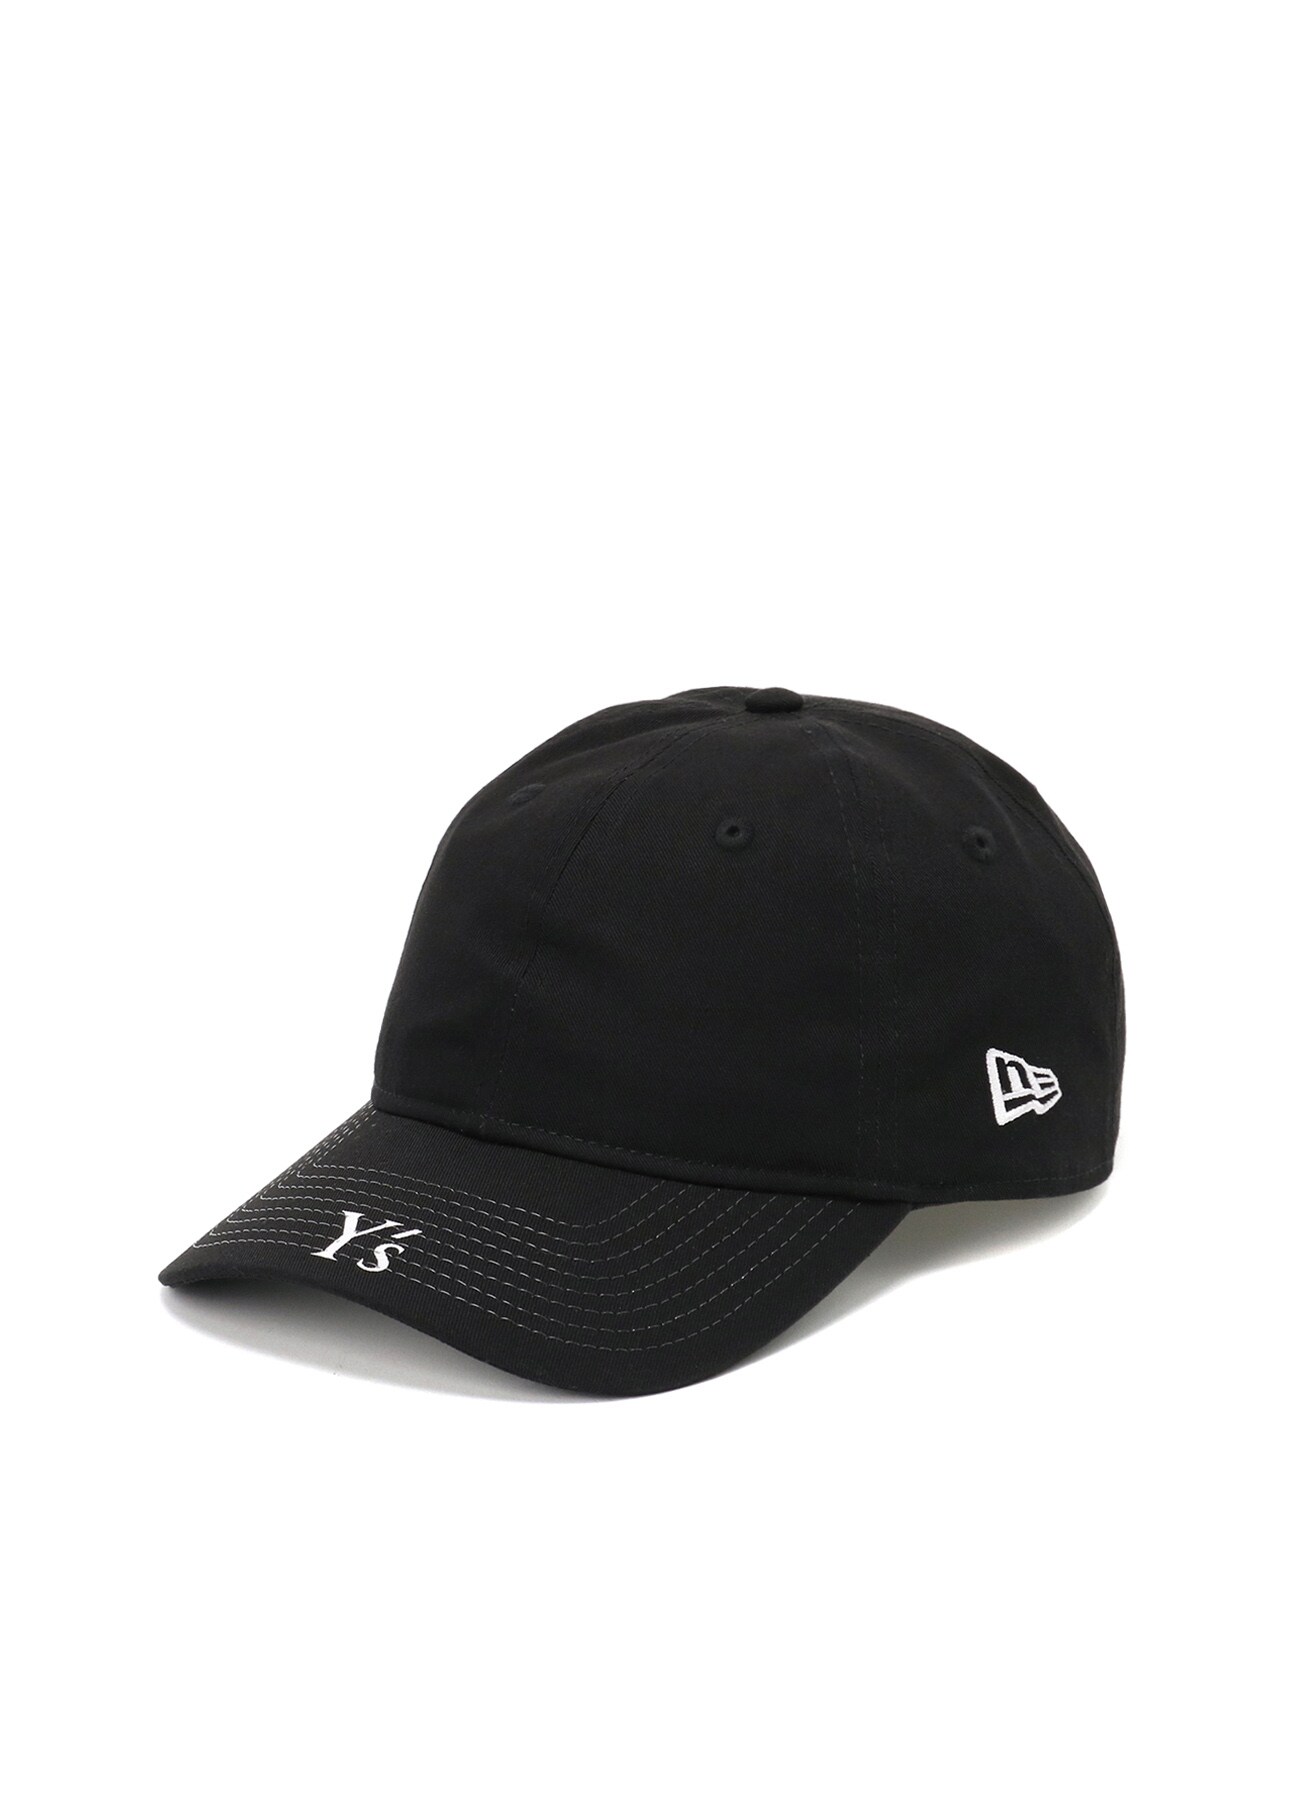 Y-3 ワイスリー 22AW × NewEra 9THIRTY Y's VISOR LOGO YE-H11-091 ロゴプリント ベースボールキャップ 6パネル 帽子 ブラック